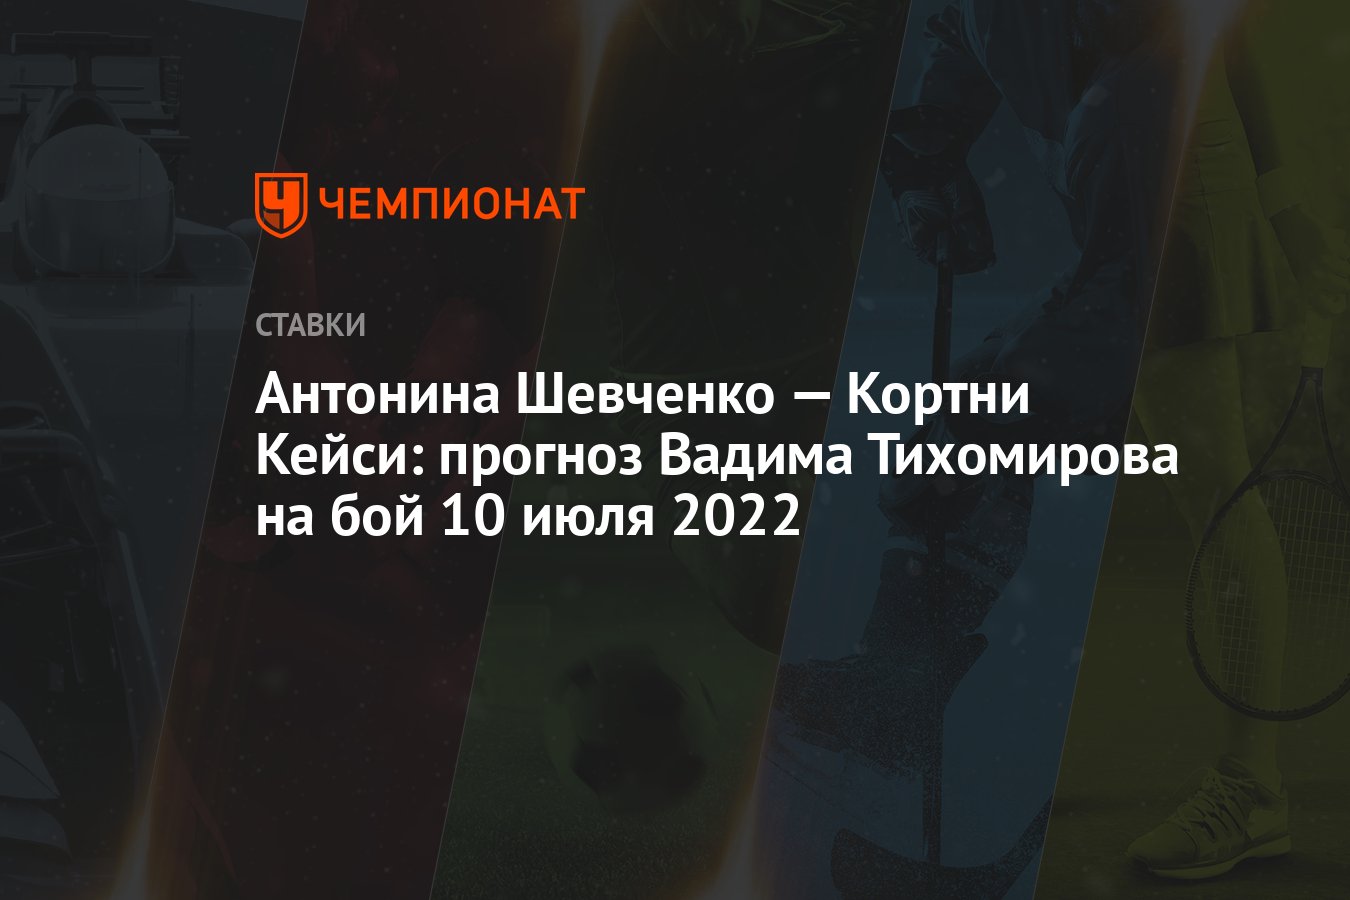 antonina-shevchenko-–-courtney-casey:-vadim-tikhomirov'un-10-temmuz-2022-dovus-tahmini